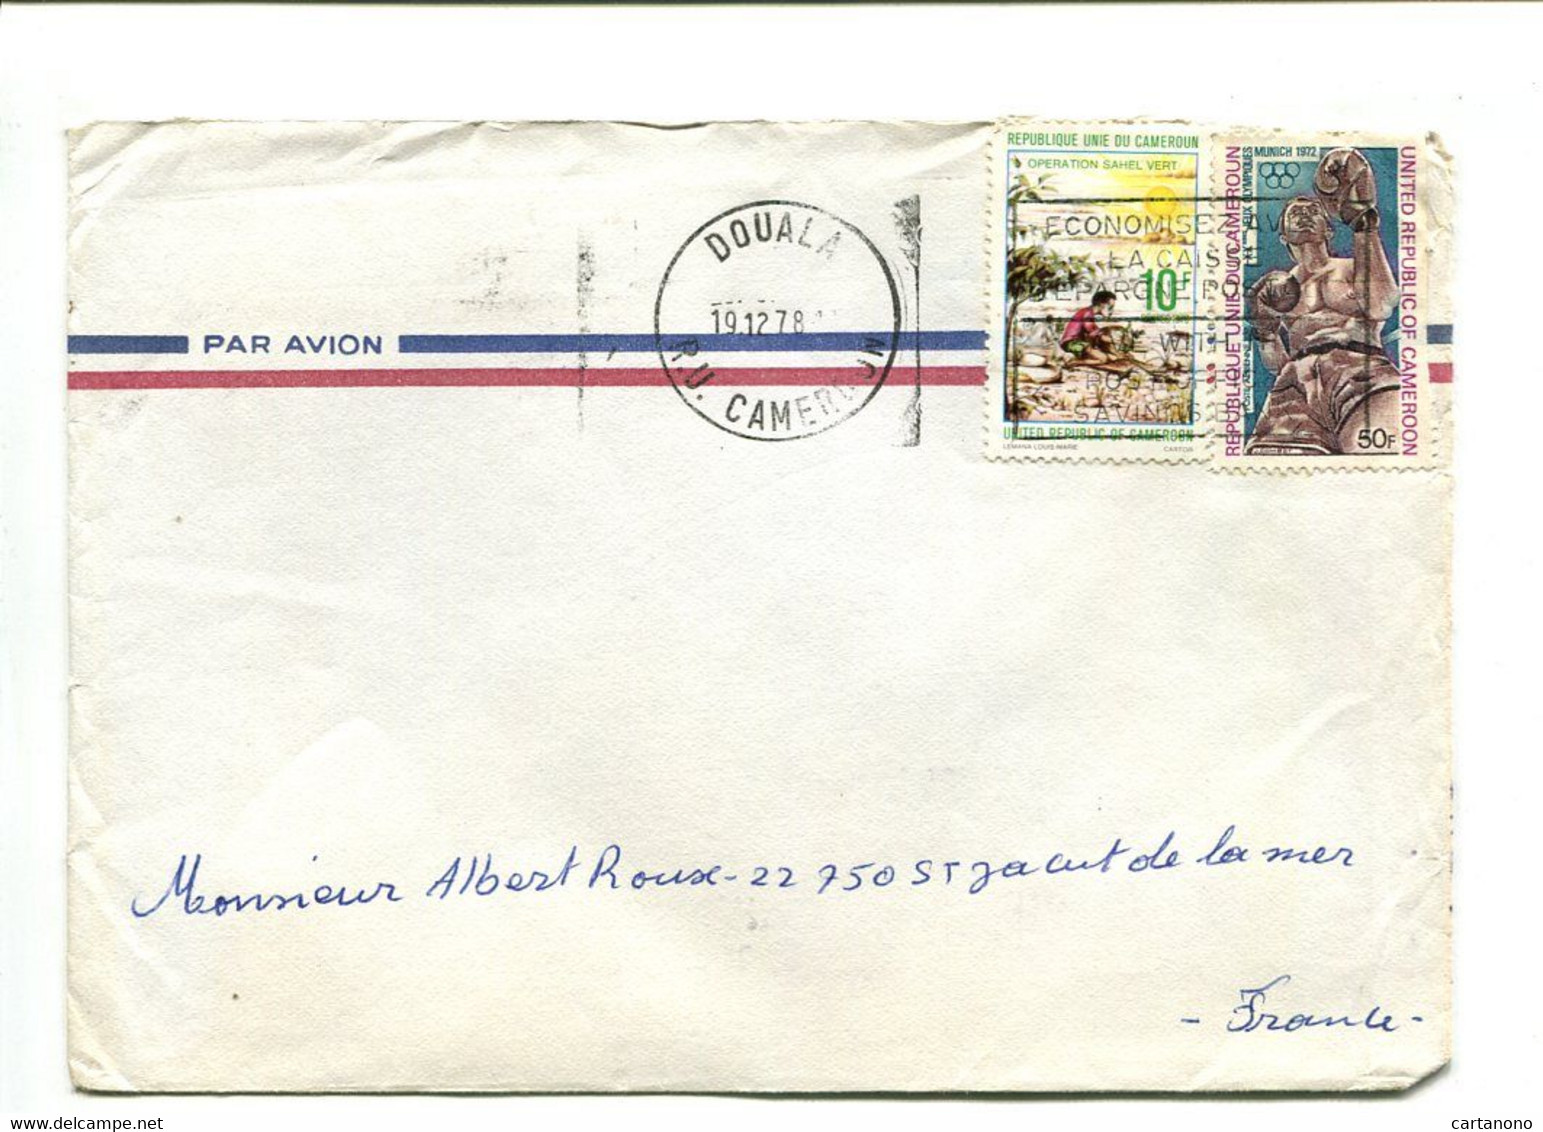 CAMEROUN Yaounde 1979 - Affranchissement Sur Lettre Par Avion - - Camerún (1960-...)